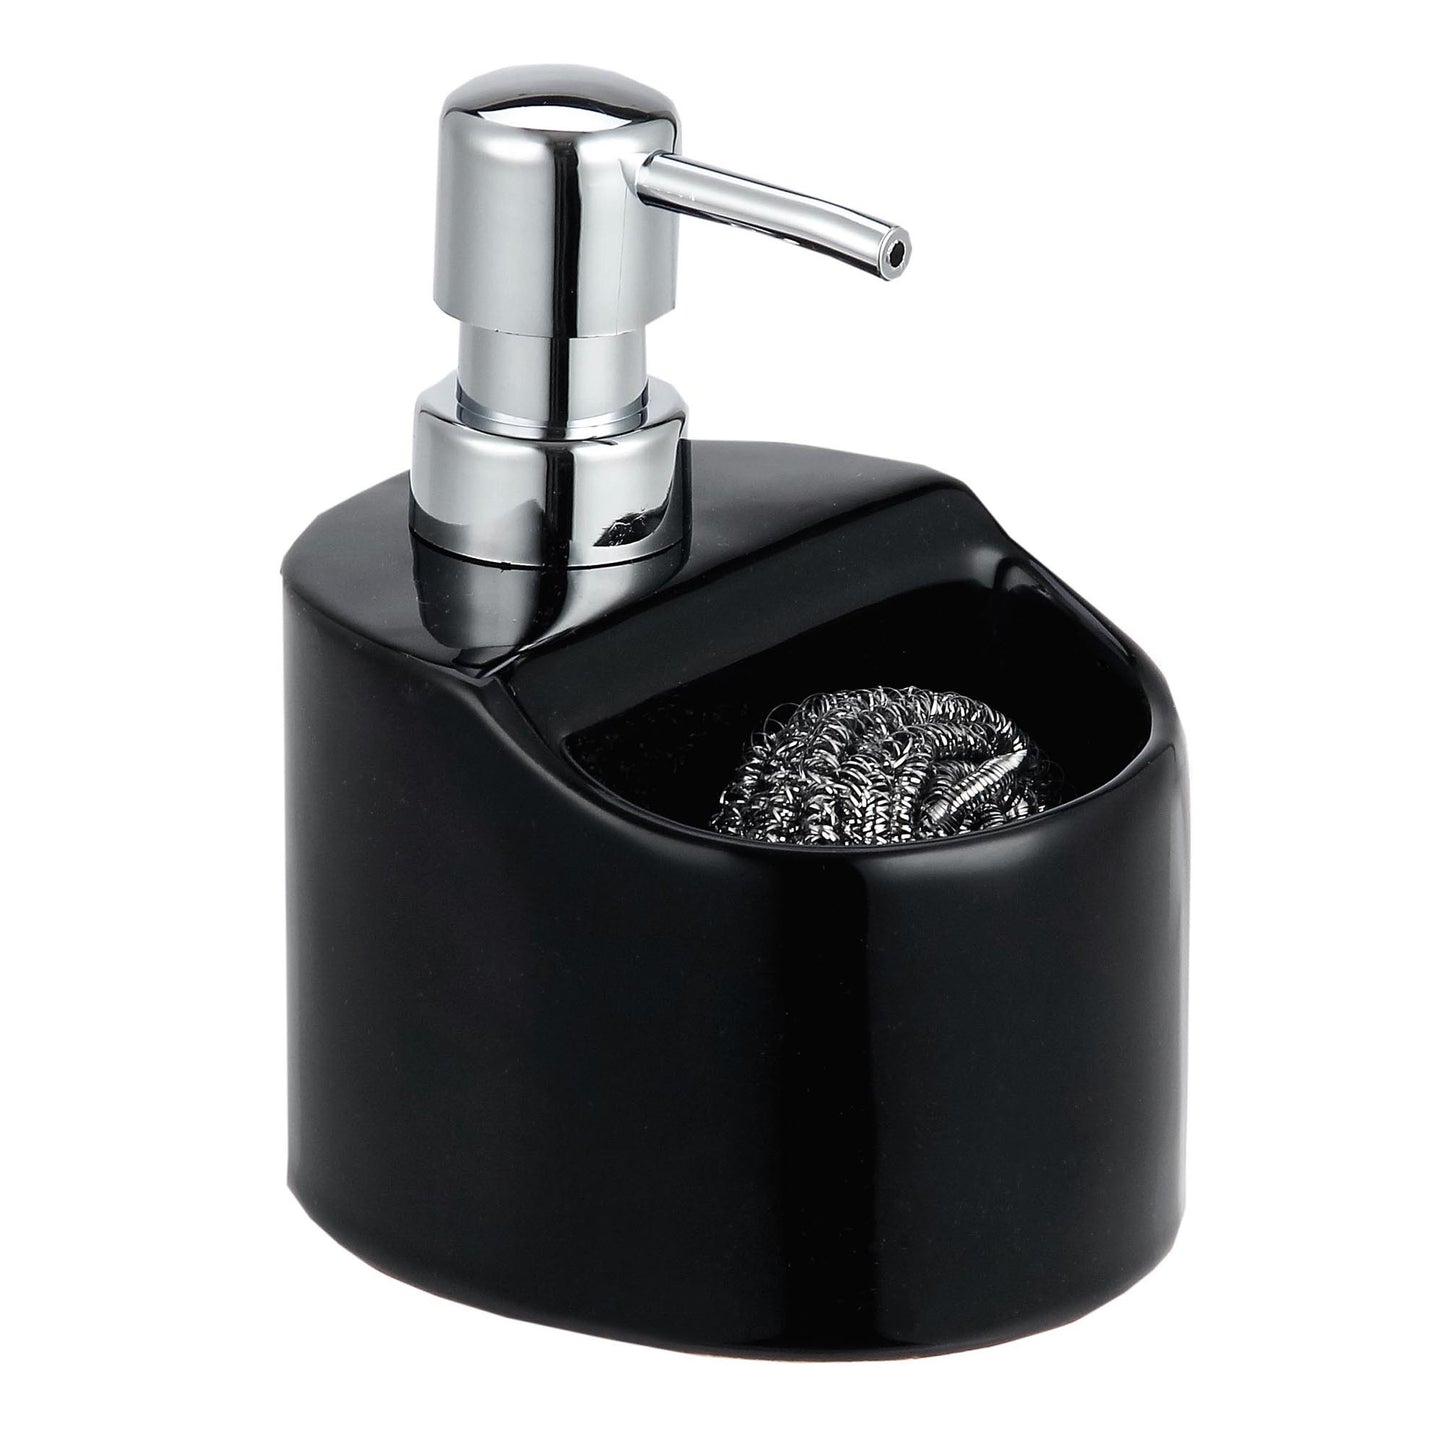 Home Basics Soap Dispenser with Sponge Holder, Black - Black